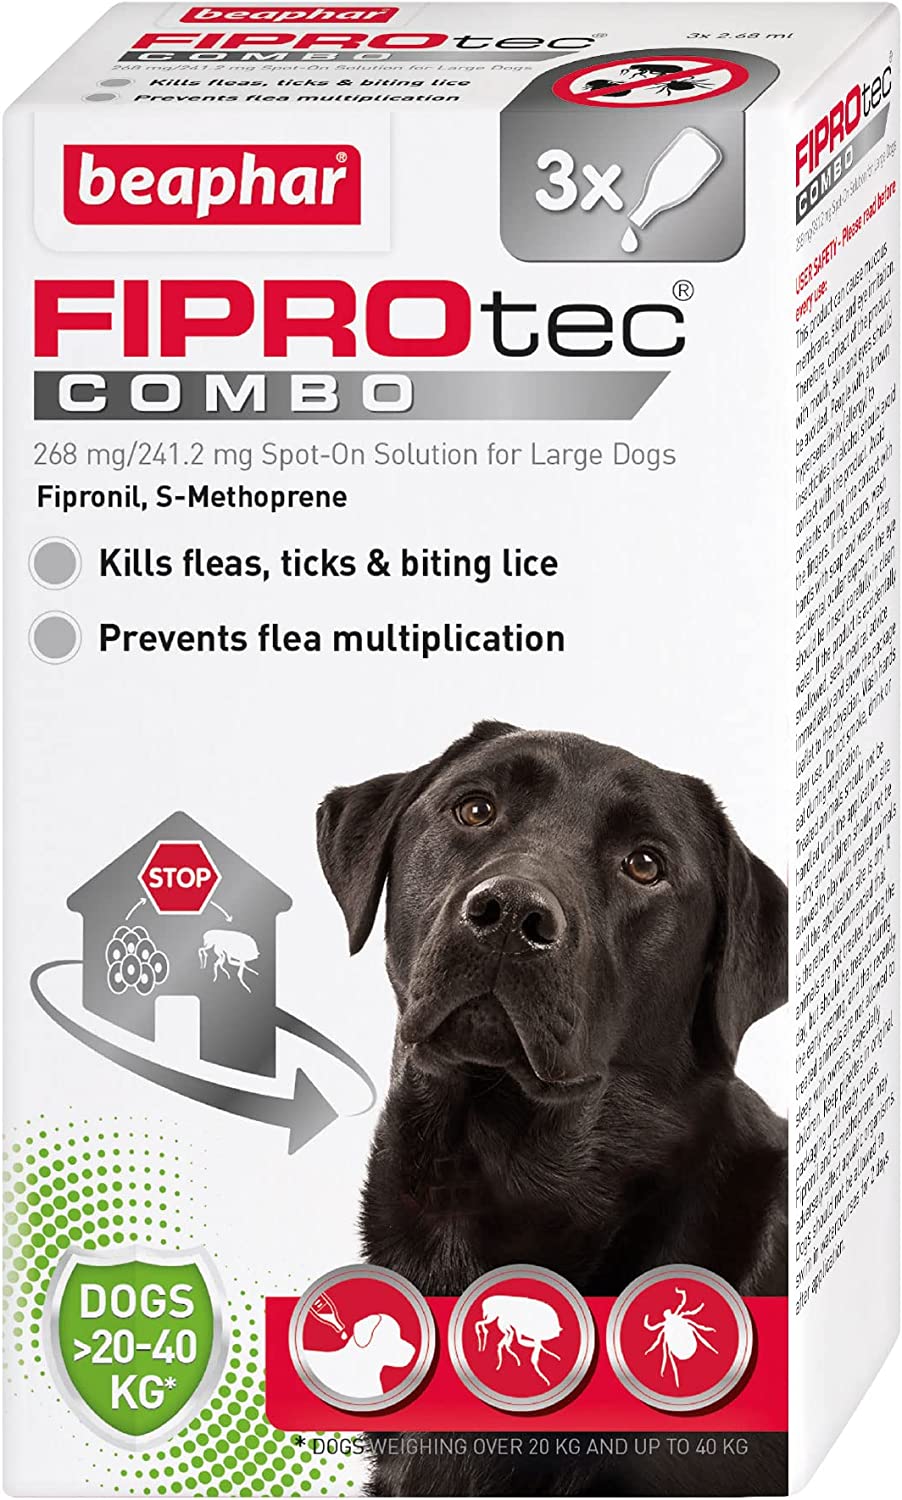 Beaphar Fiprotec Combo Flea & Tick Spot On For Large Dogs (20-40kg) 3 pack